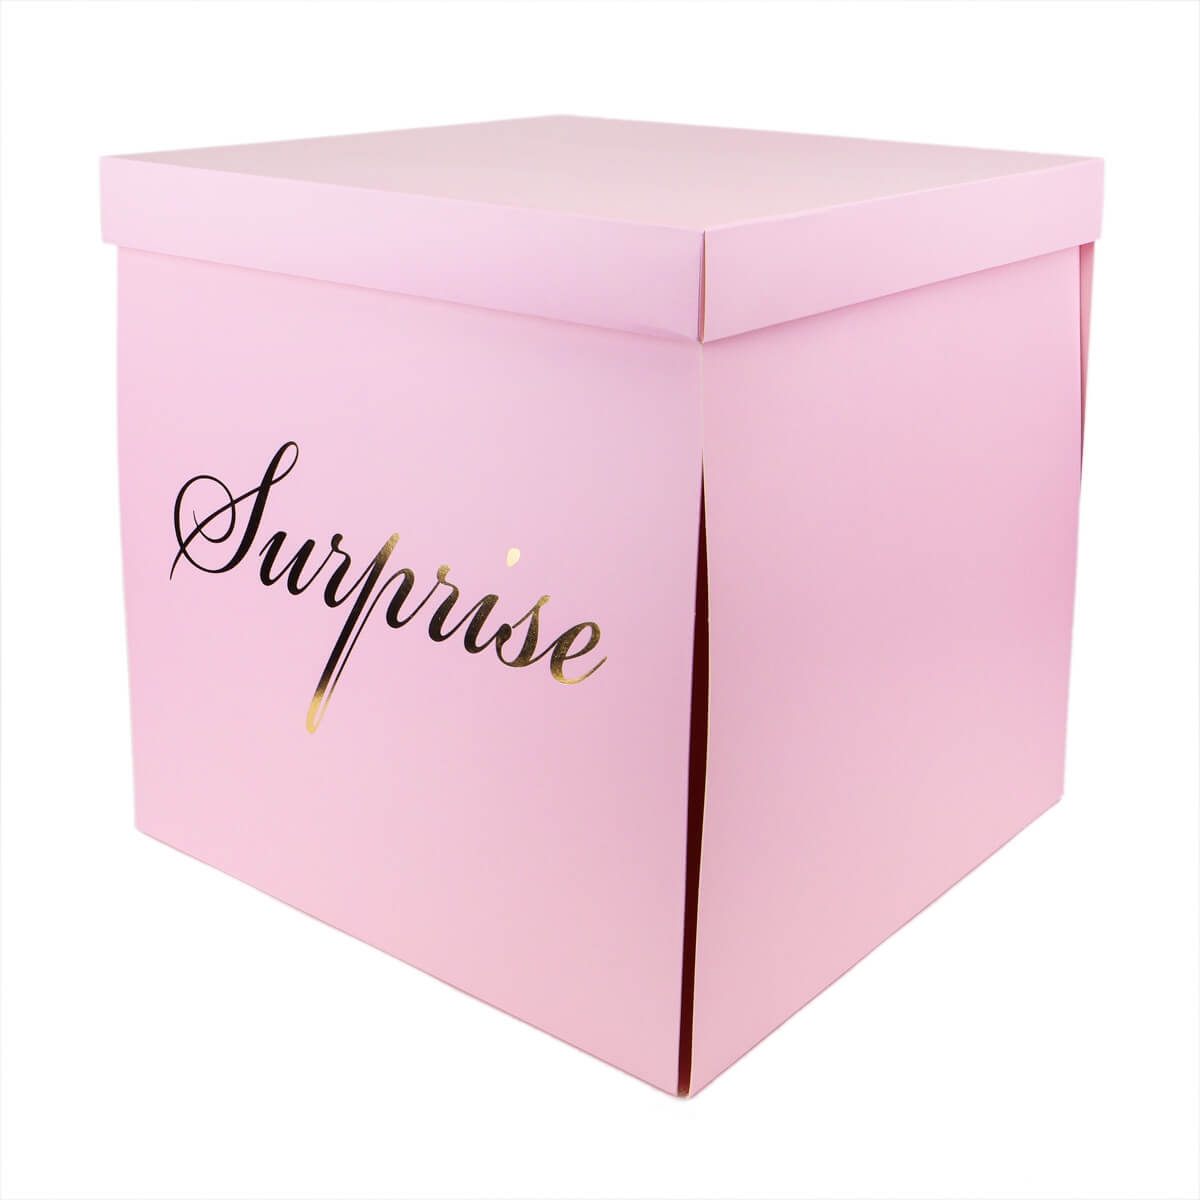 Коробка "Большой сюрприз" 50*50, розовая (8916-007-3), Картон, Elisey